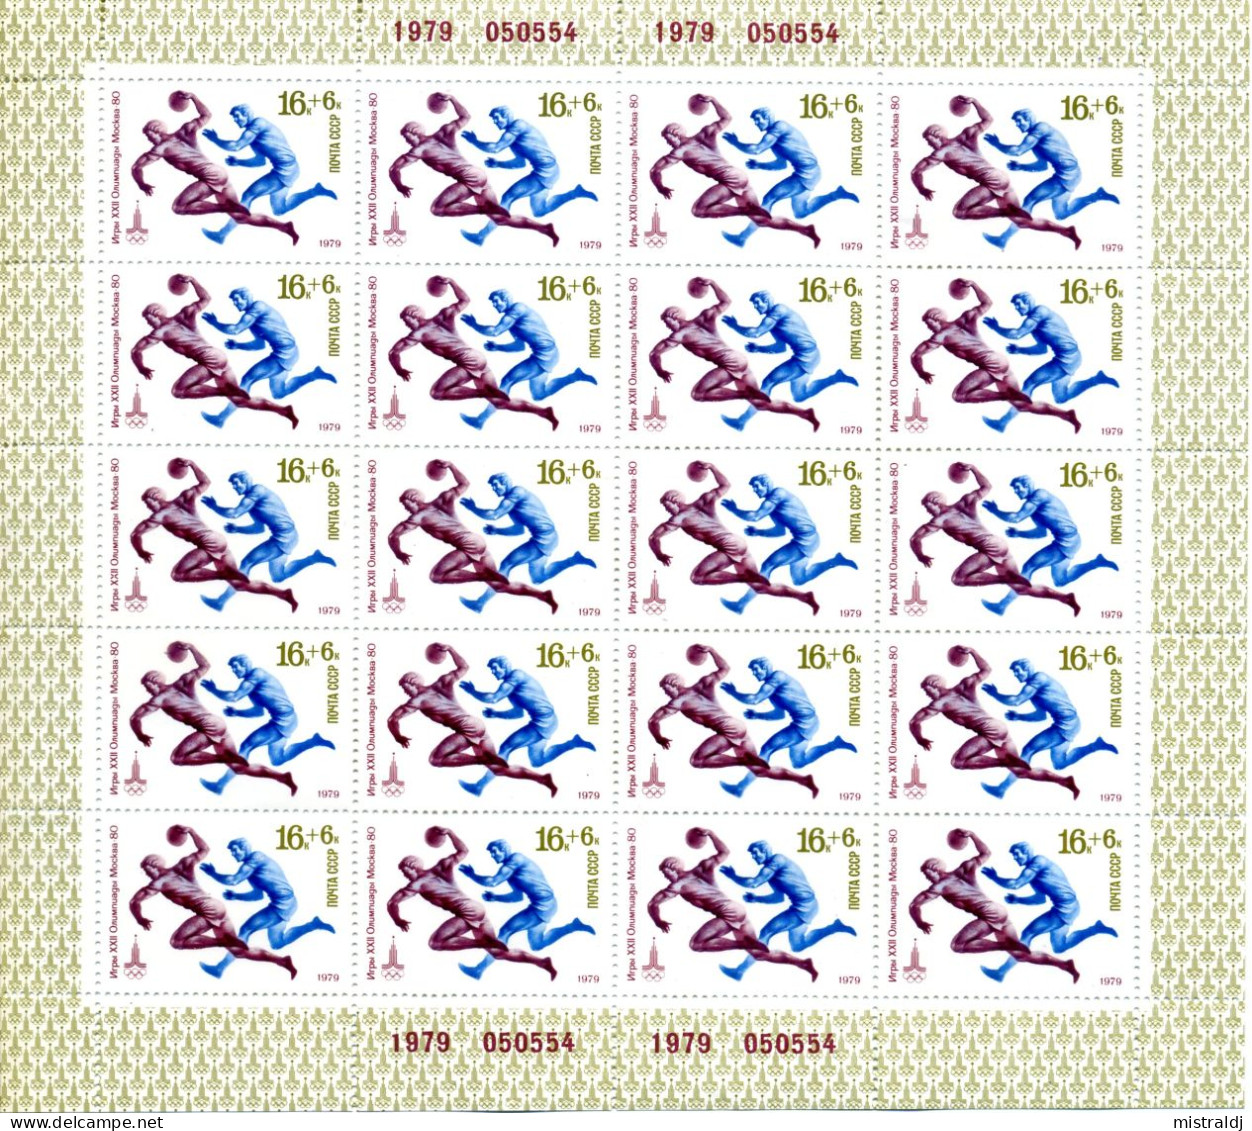 Russie, Russia; Magnifique classeur de 16 miniplanches timbres URSS JO de Moscou 1980 neufs avec étui